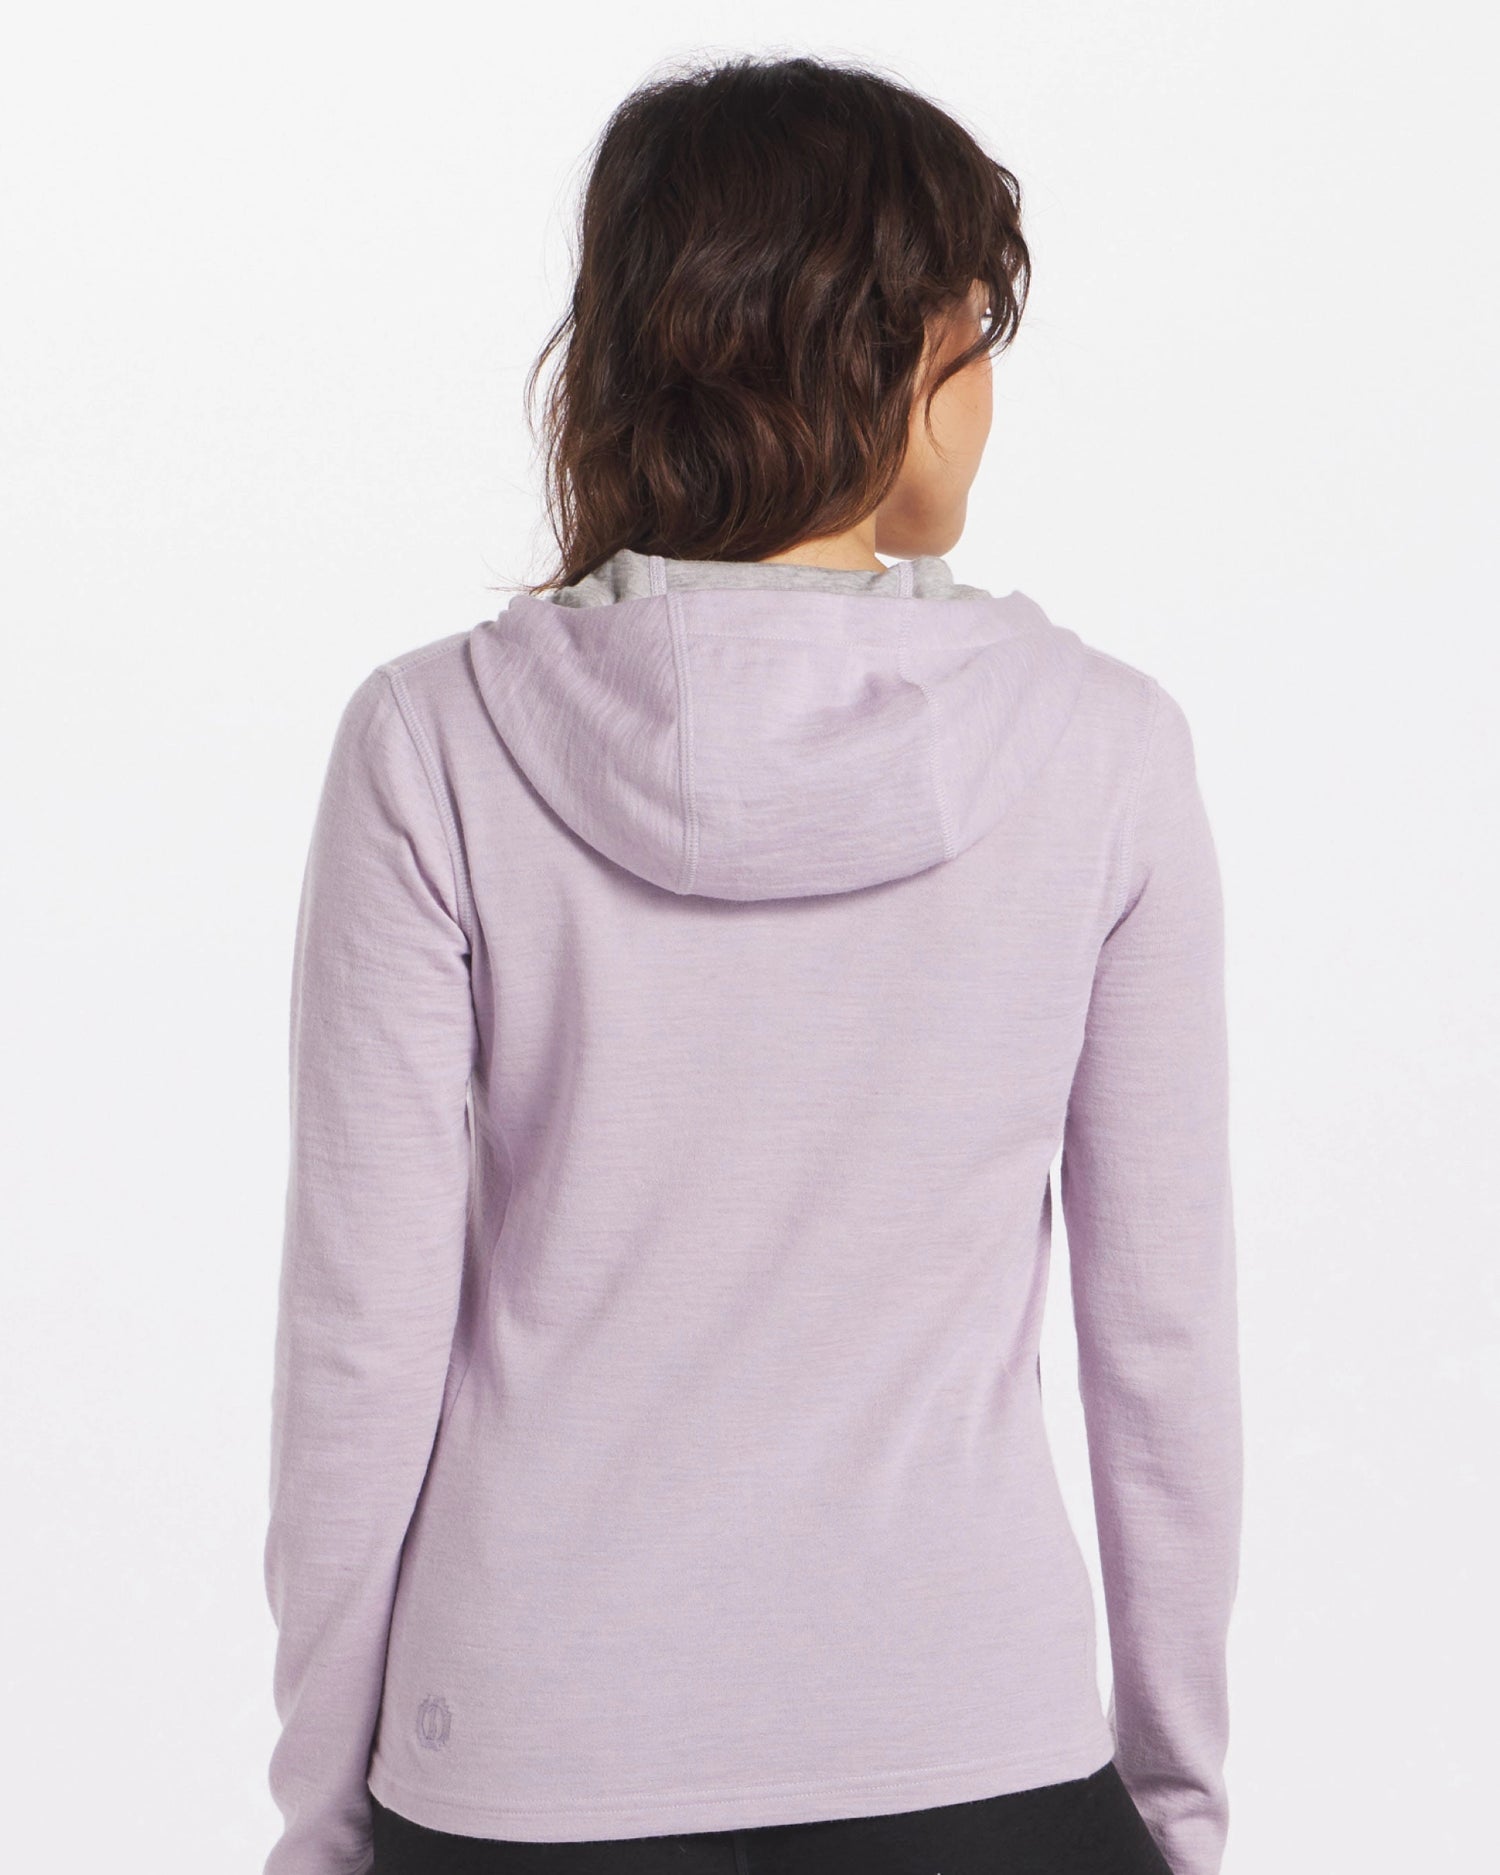 A woman wearing a Lavender Women's Full zip.